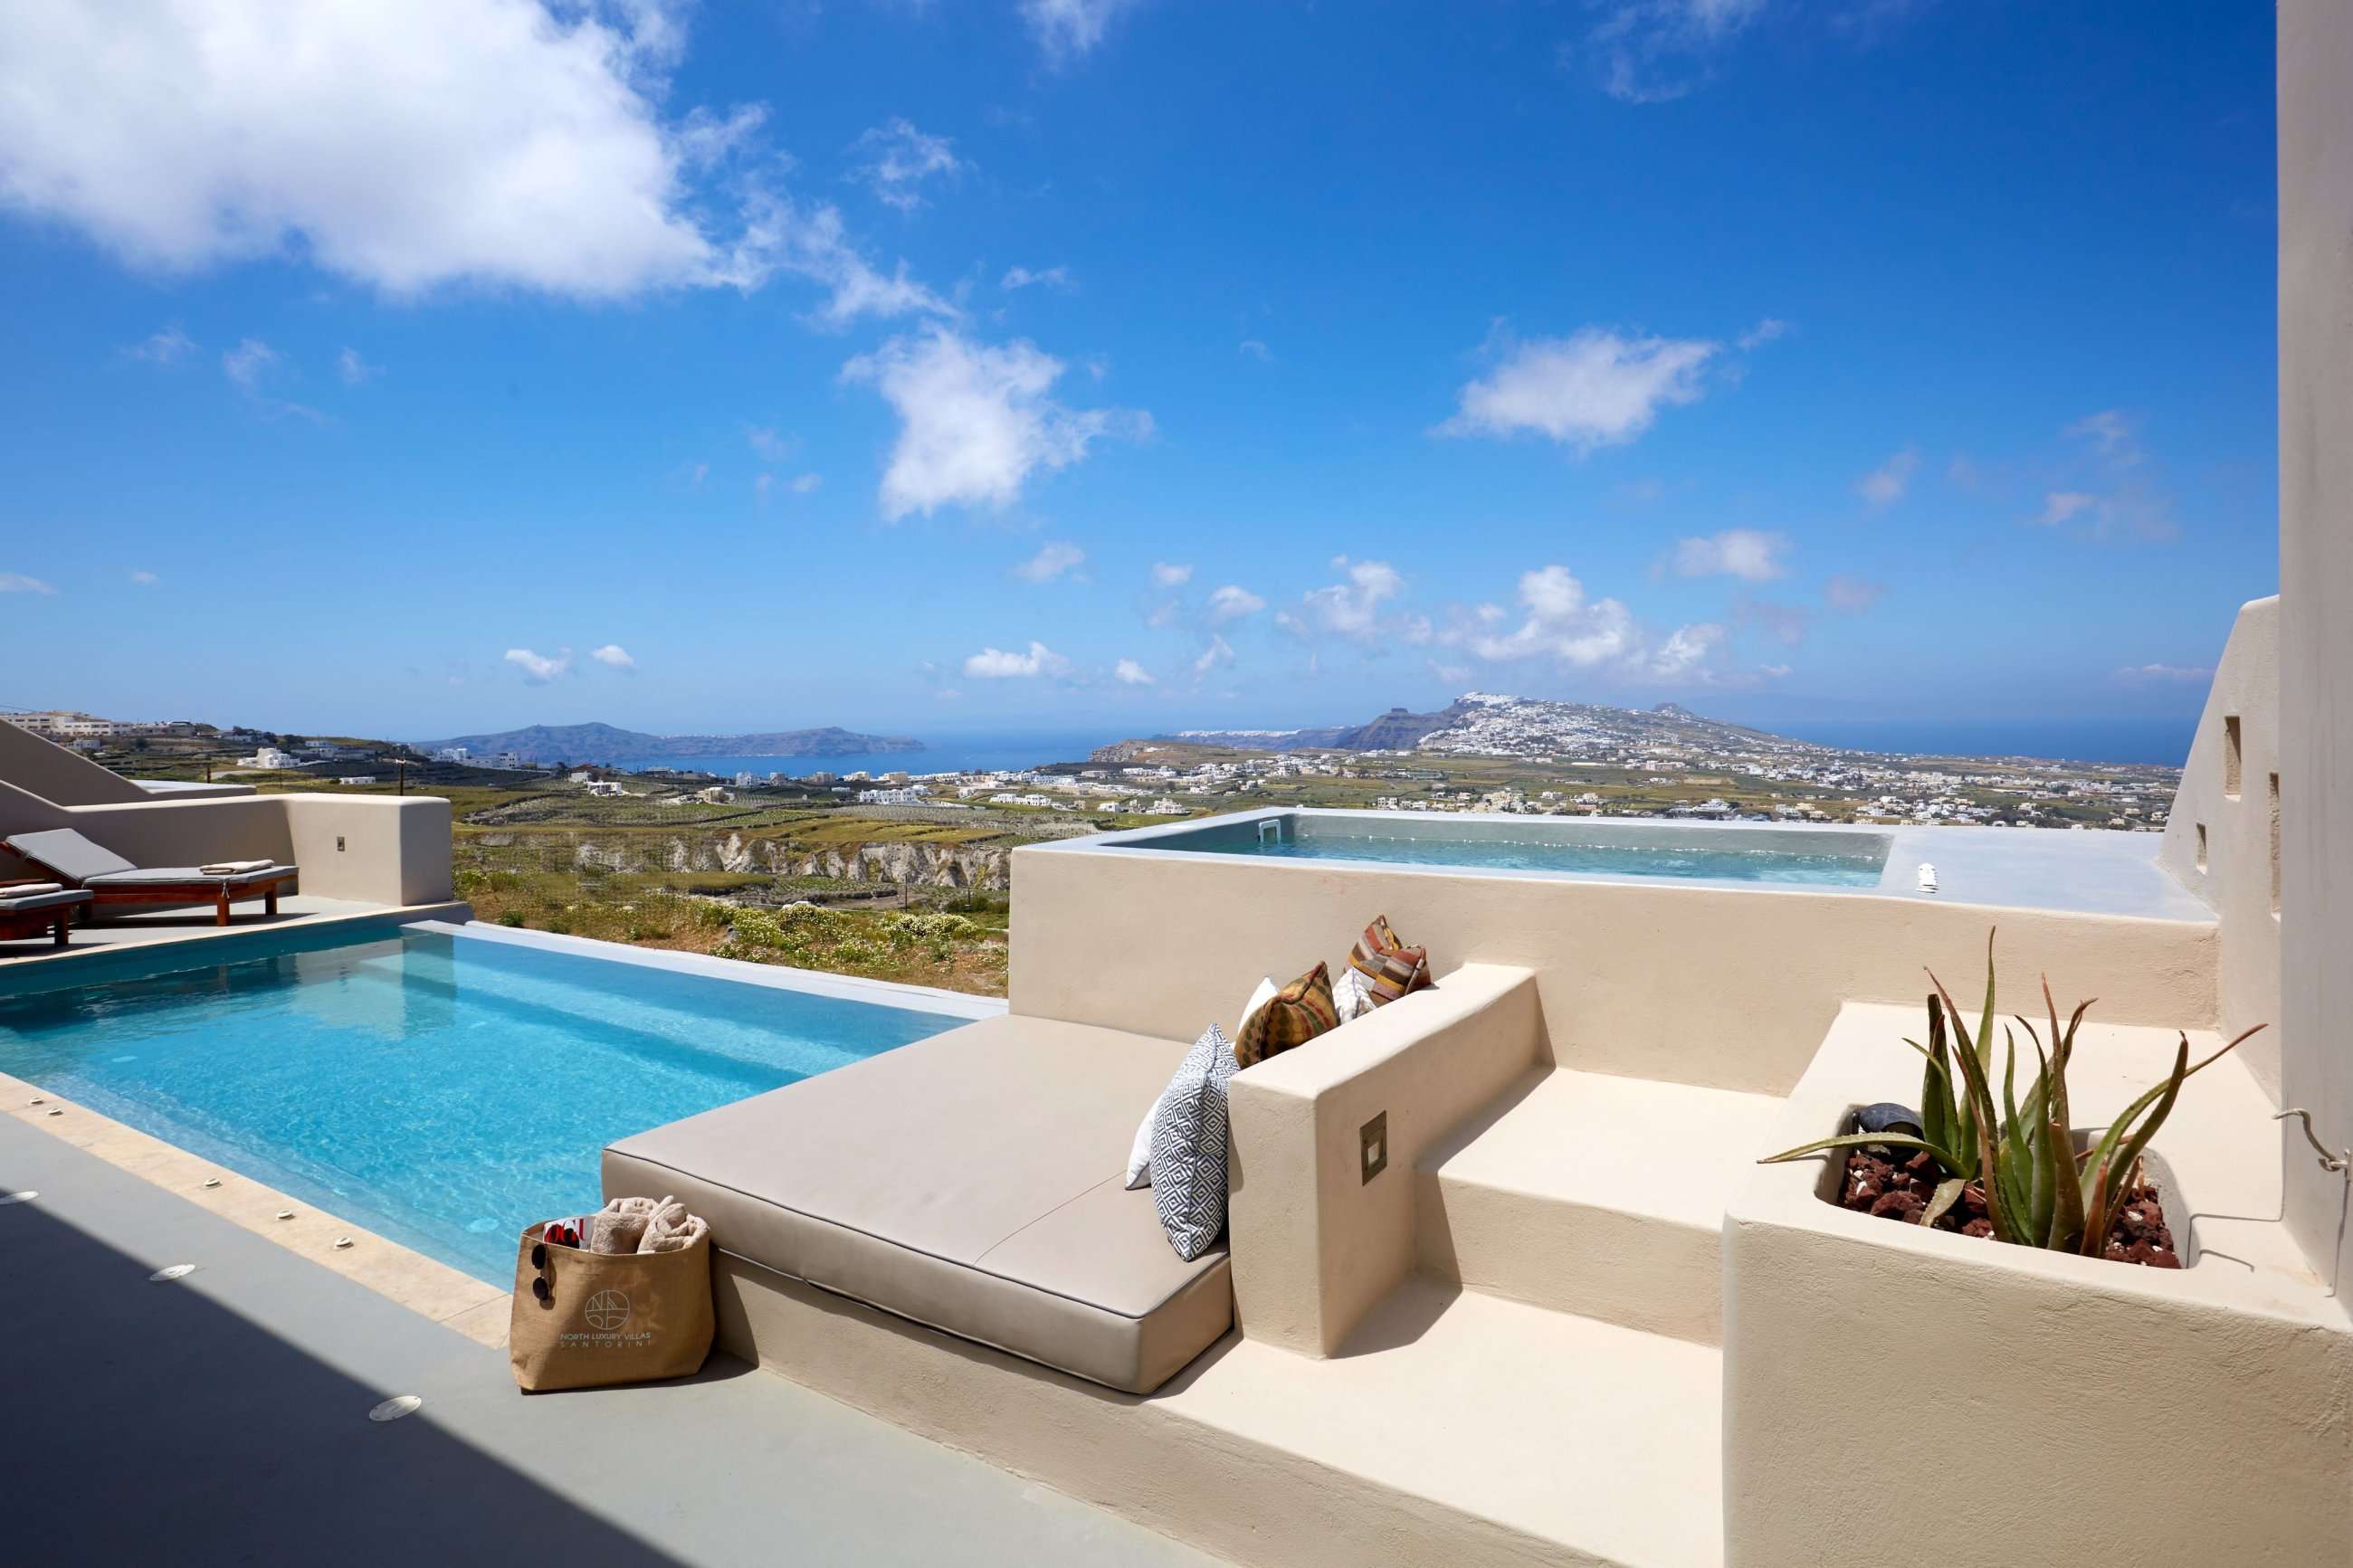 North Santorini - Luxury Villas - With Private Pool & Heated Plunge Pool